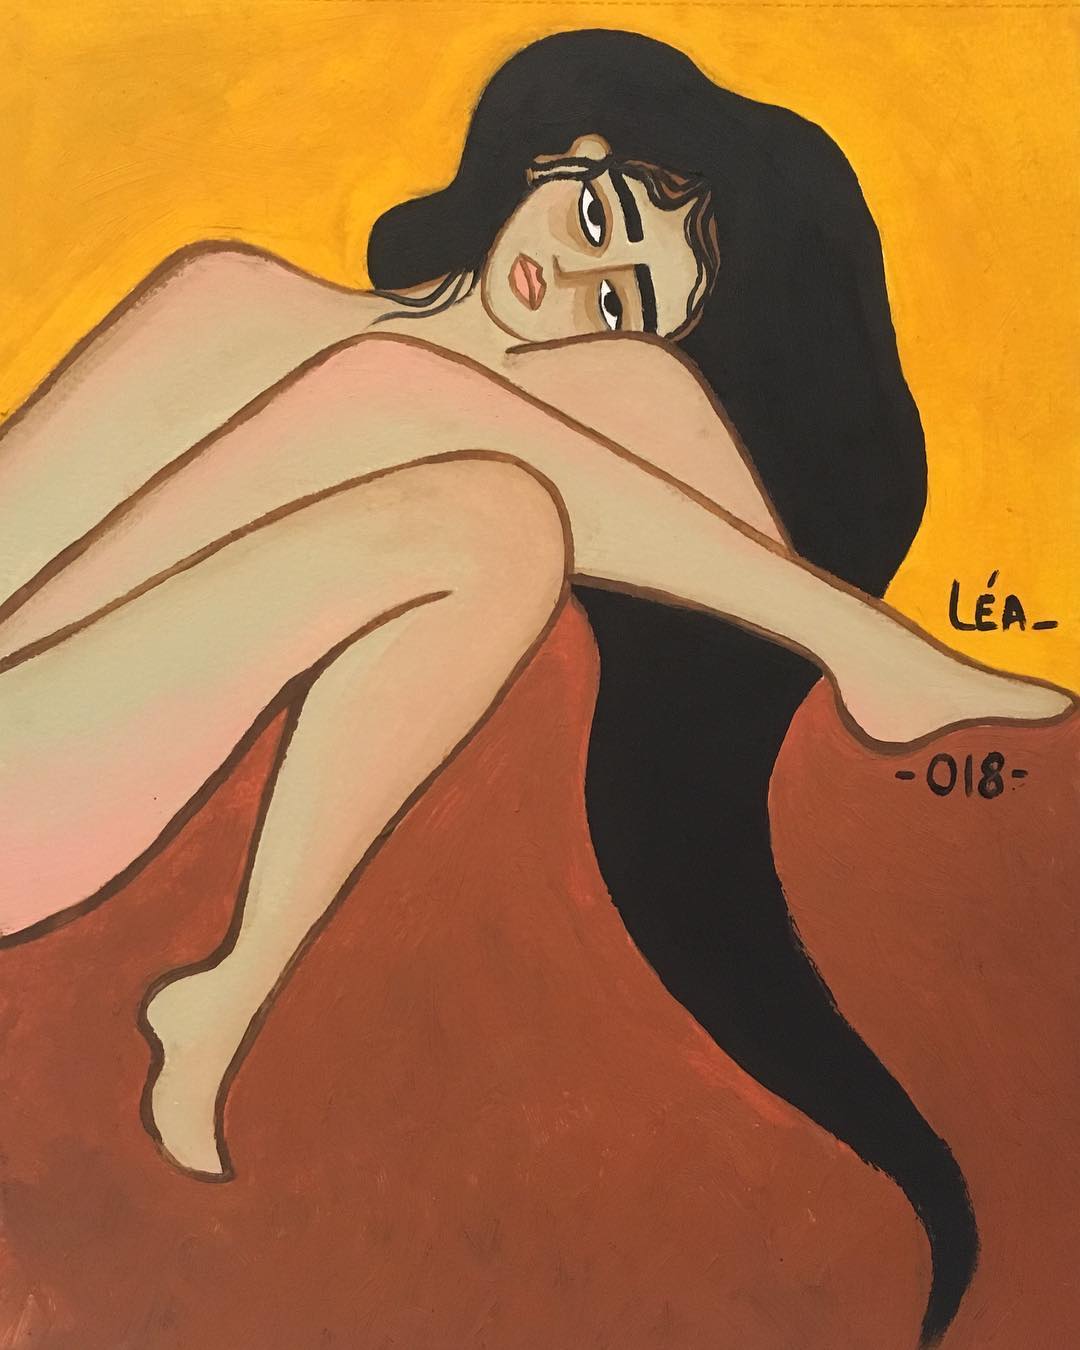 Une femme nue se contorsionne, la tête presque posée sur son genou. Fond orange clair et ocre.